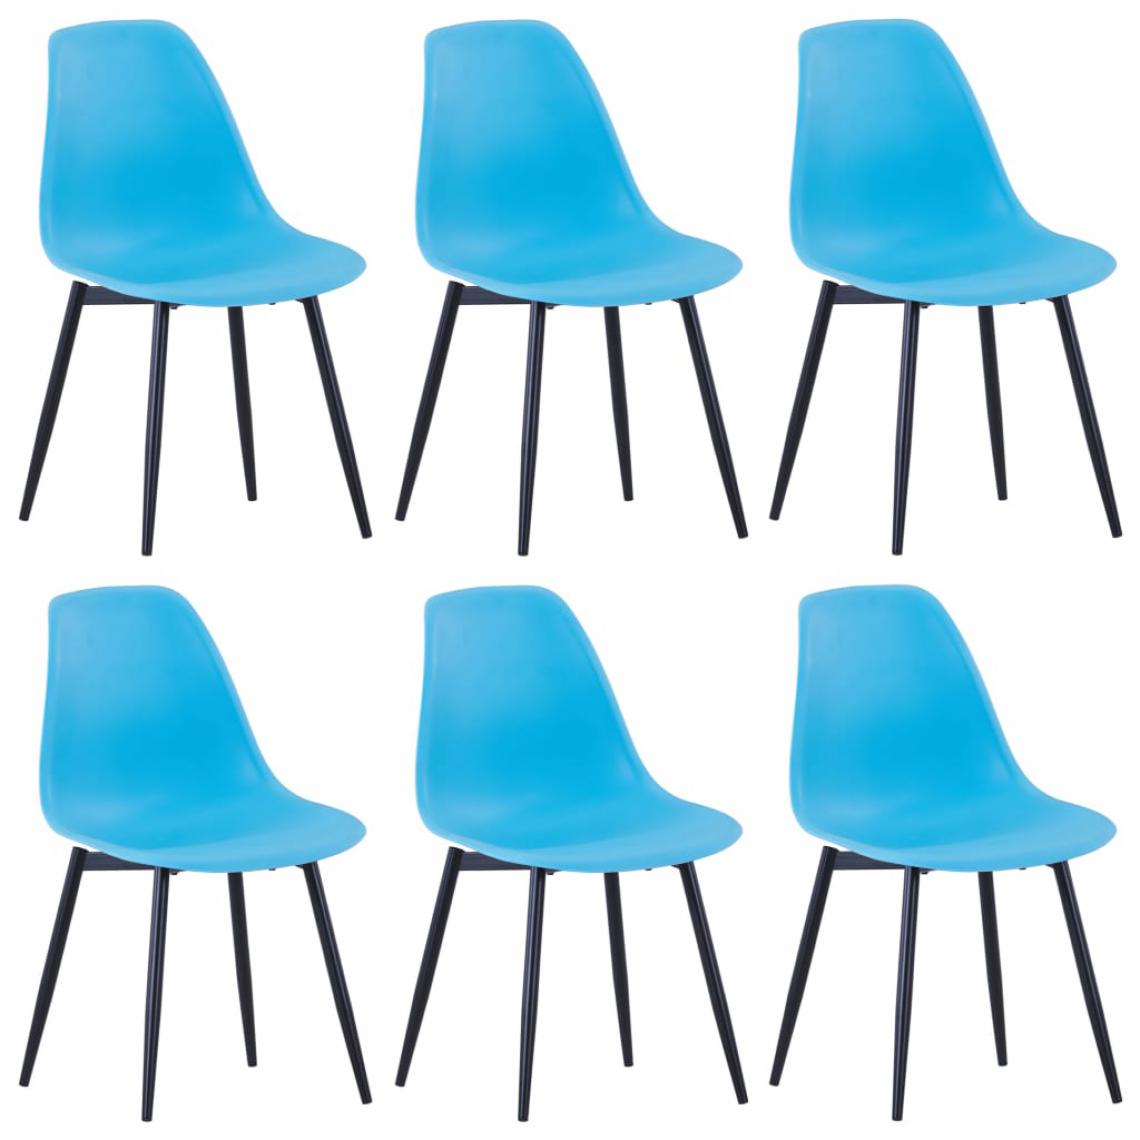 Icaverne - Moderne Fauteuils et chaises ligne Saint-Marin Chaises de salle à manger 6 pcs Bleu PP - Chaises